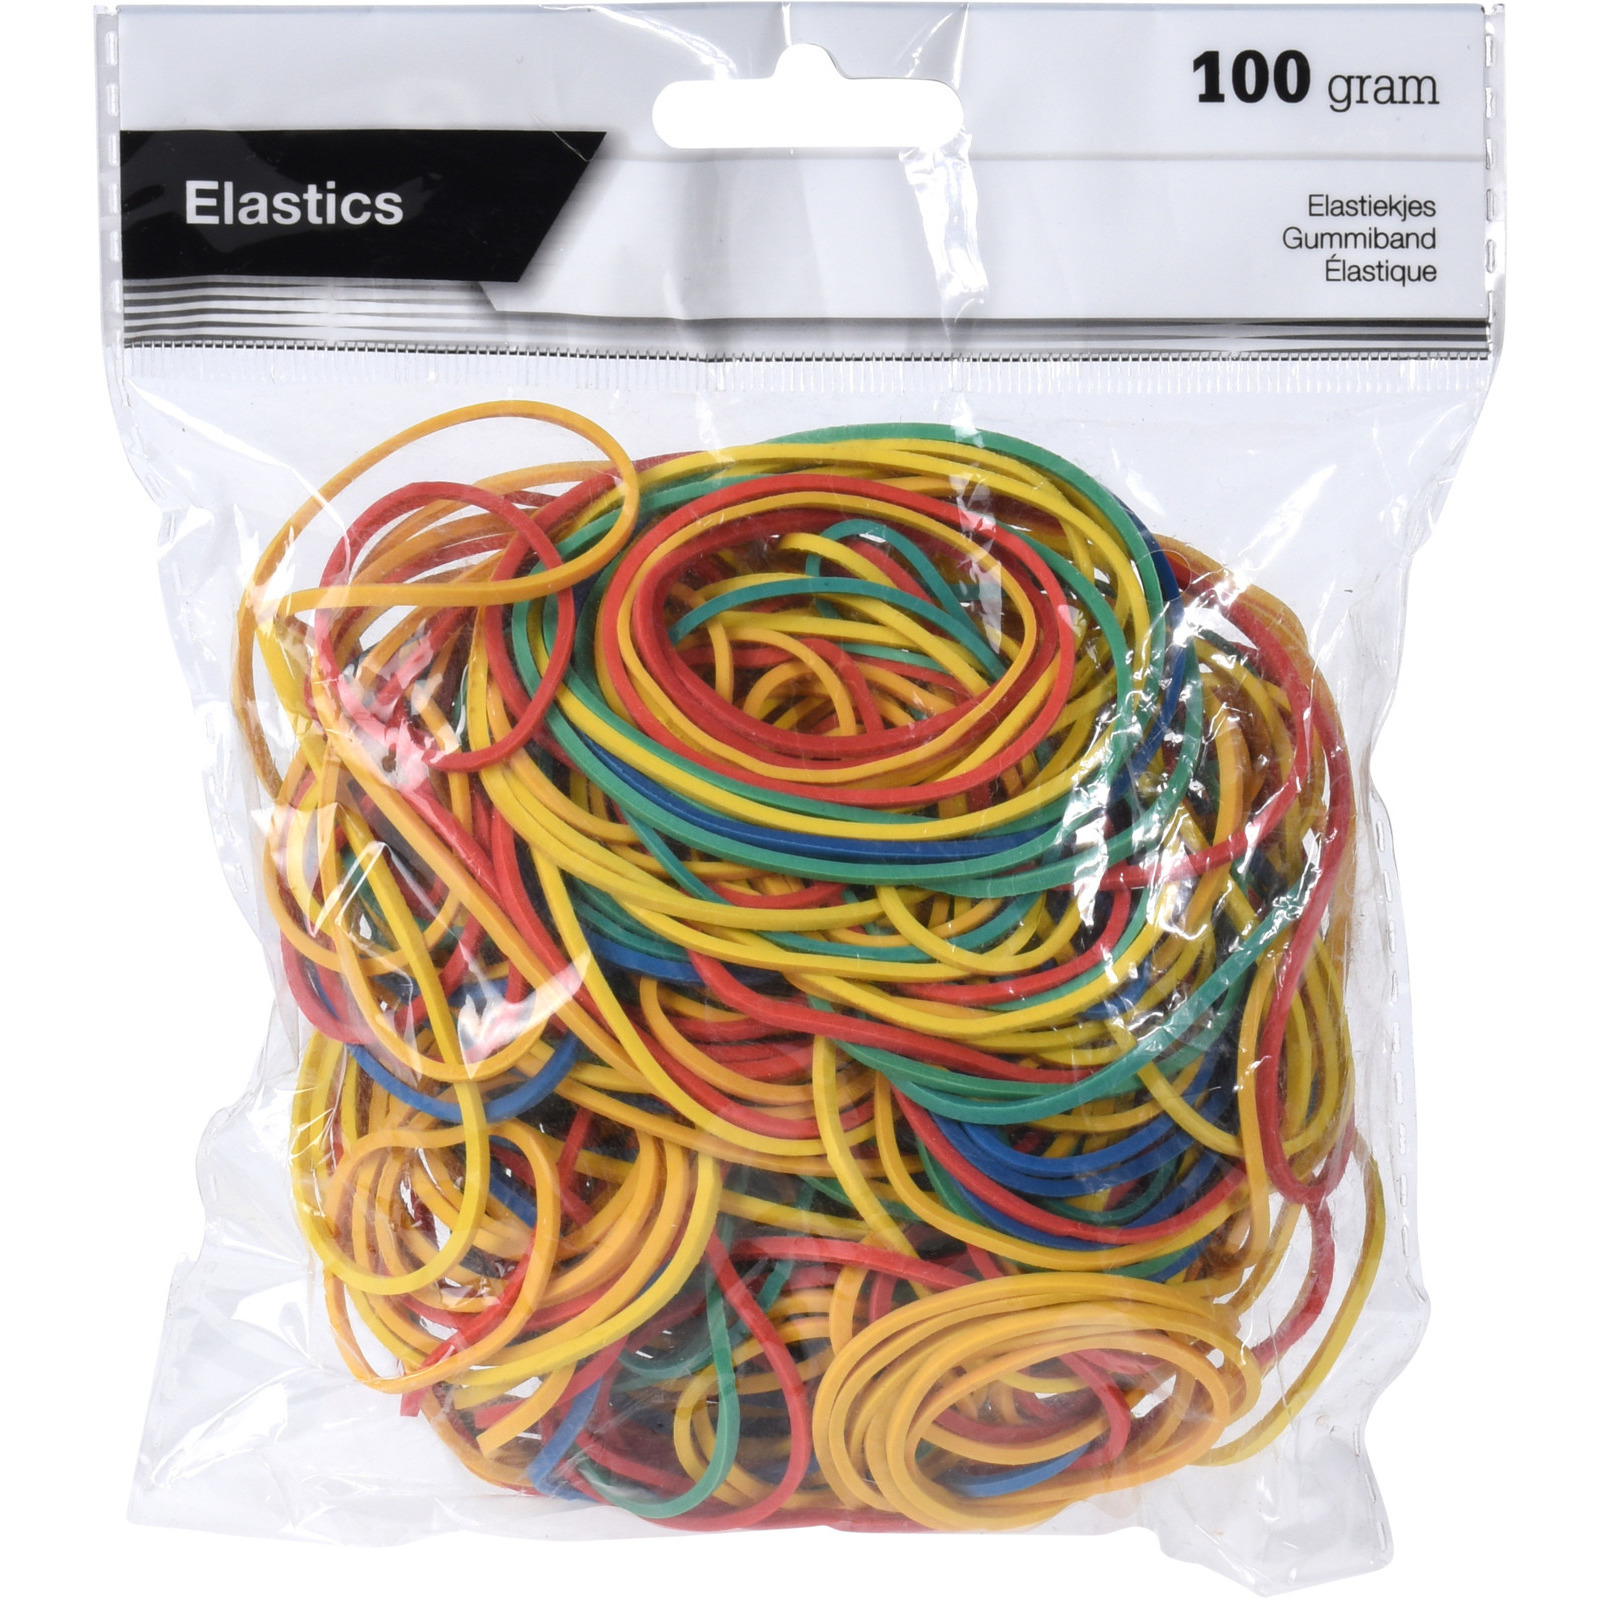 Knutsel/hobby/kantoor zak elastiekjes gekleurd 100 gram